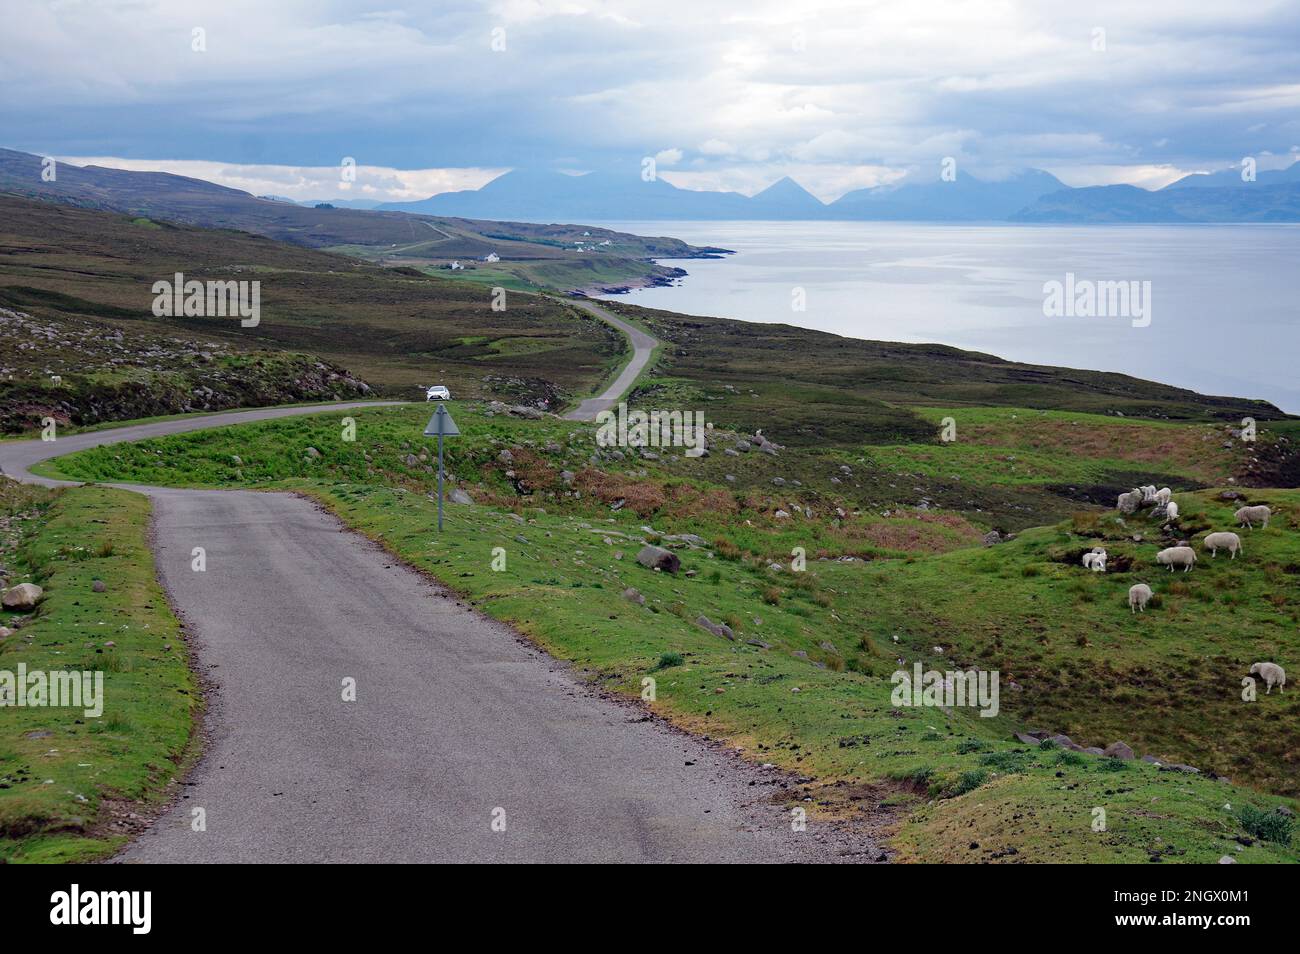 Schmale, einspurige Straße, schlängelt sich durch weite, grüne Landschaften entlang des Meeres. Applecross, Highlands, Schottland, Großbritannien Stockfoto